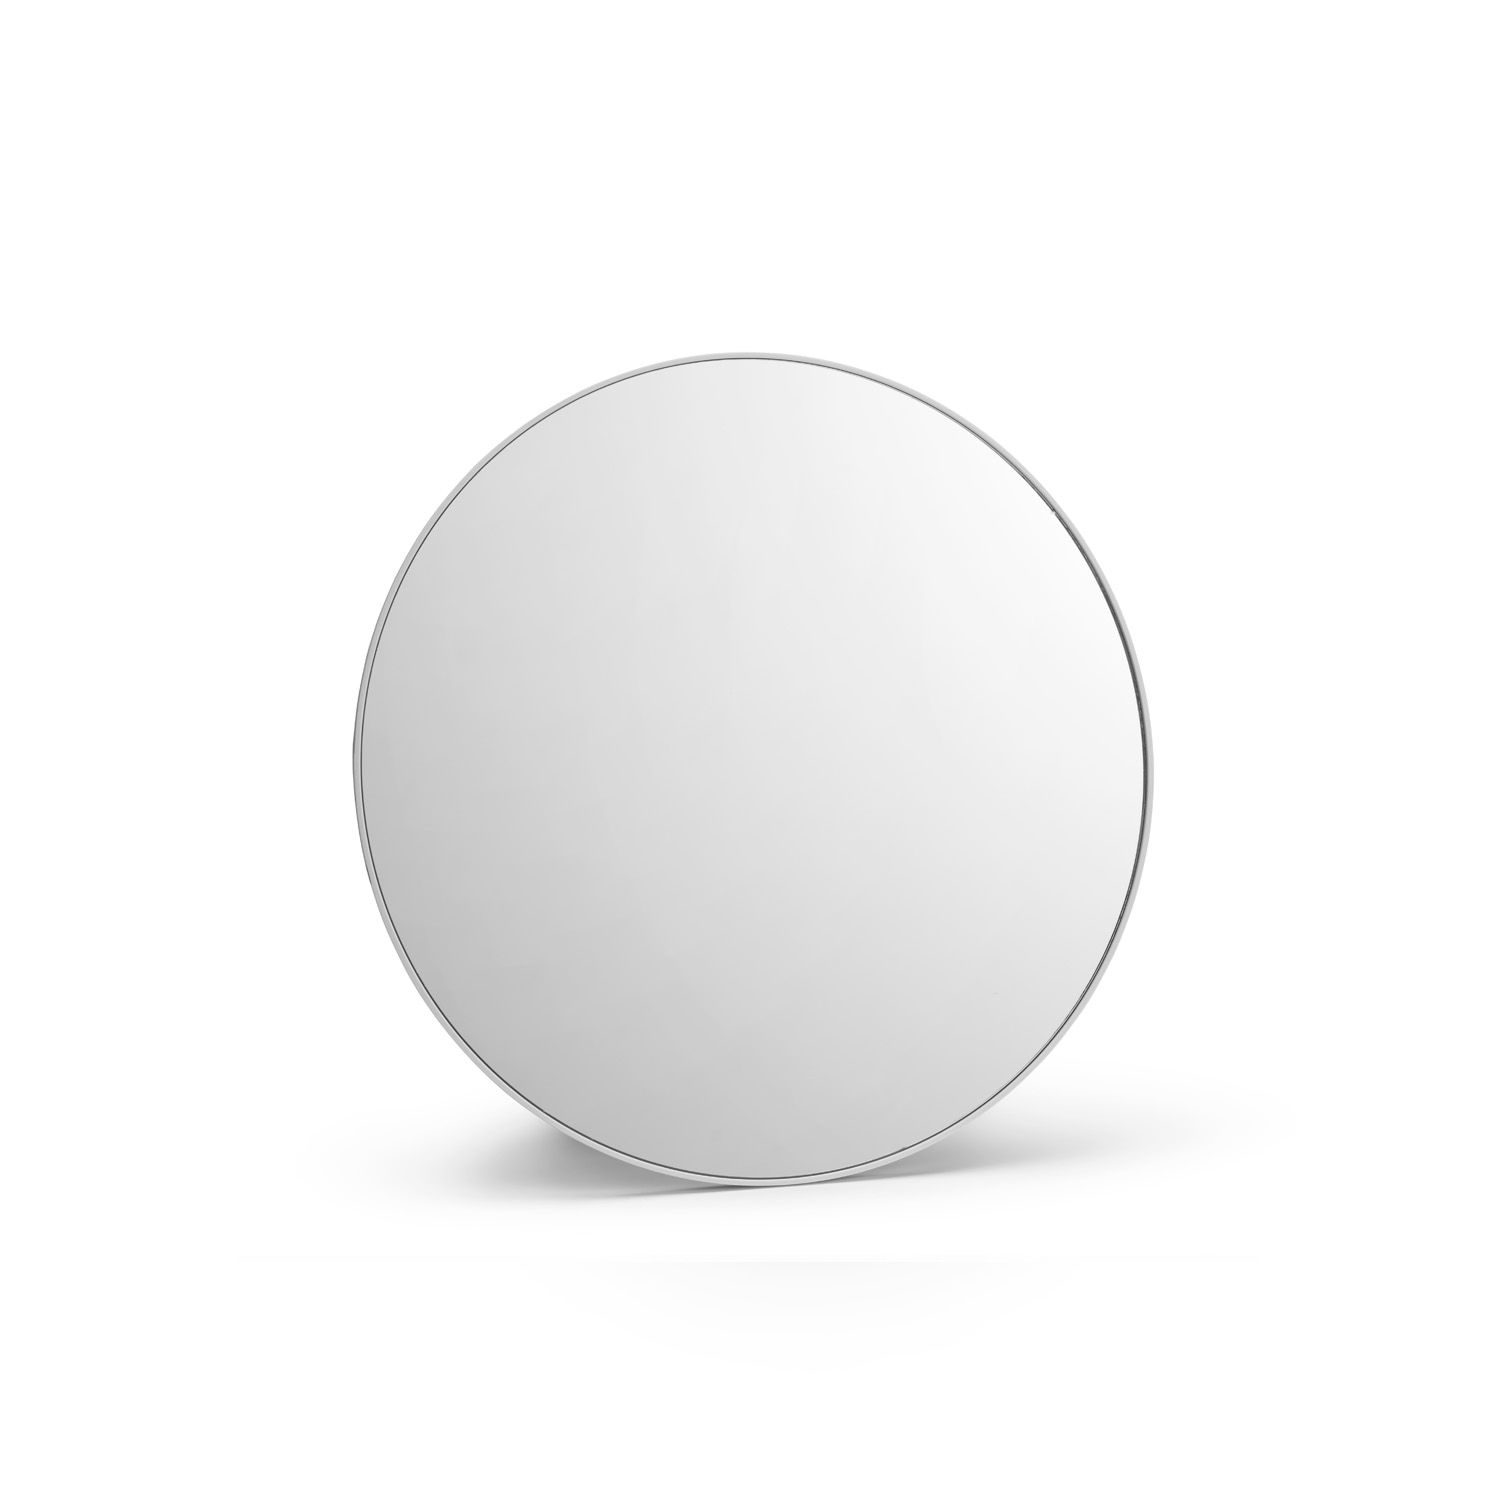 Control mirror - stylingové zrkadlo, priemer 29 cm